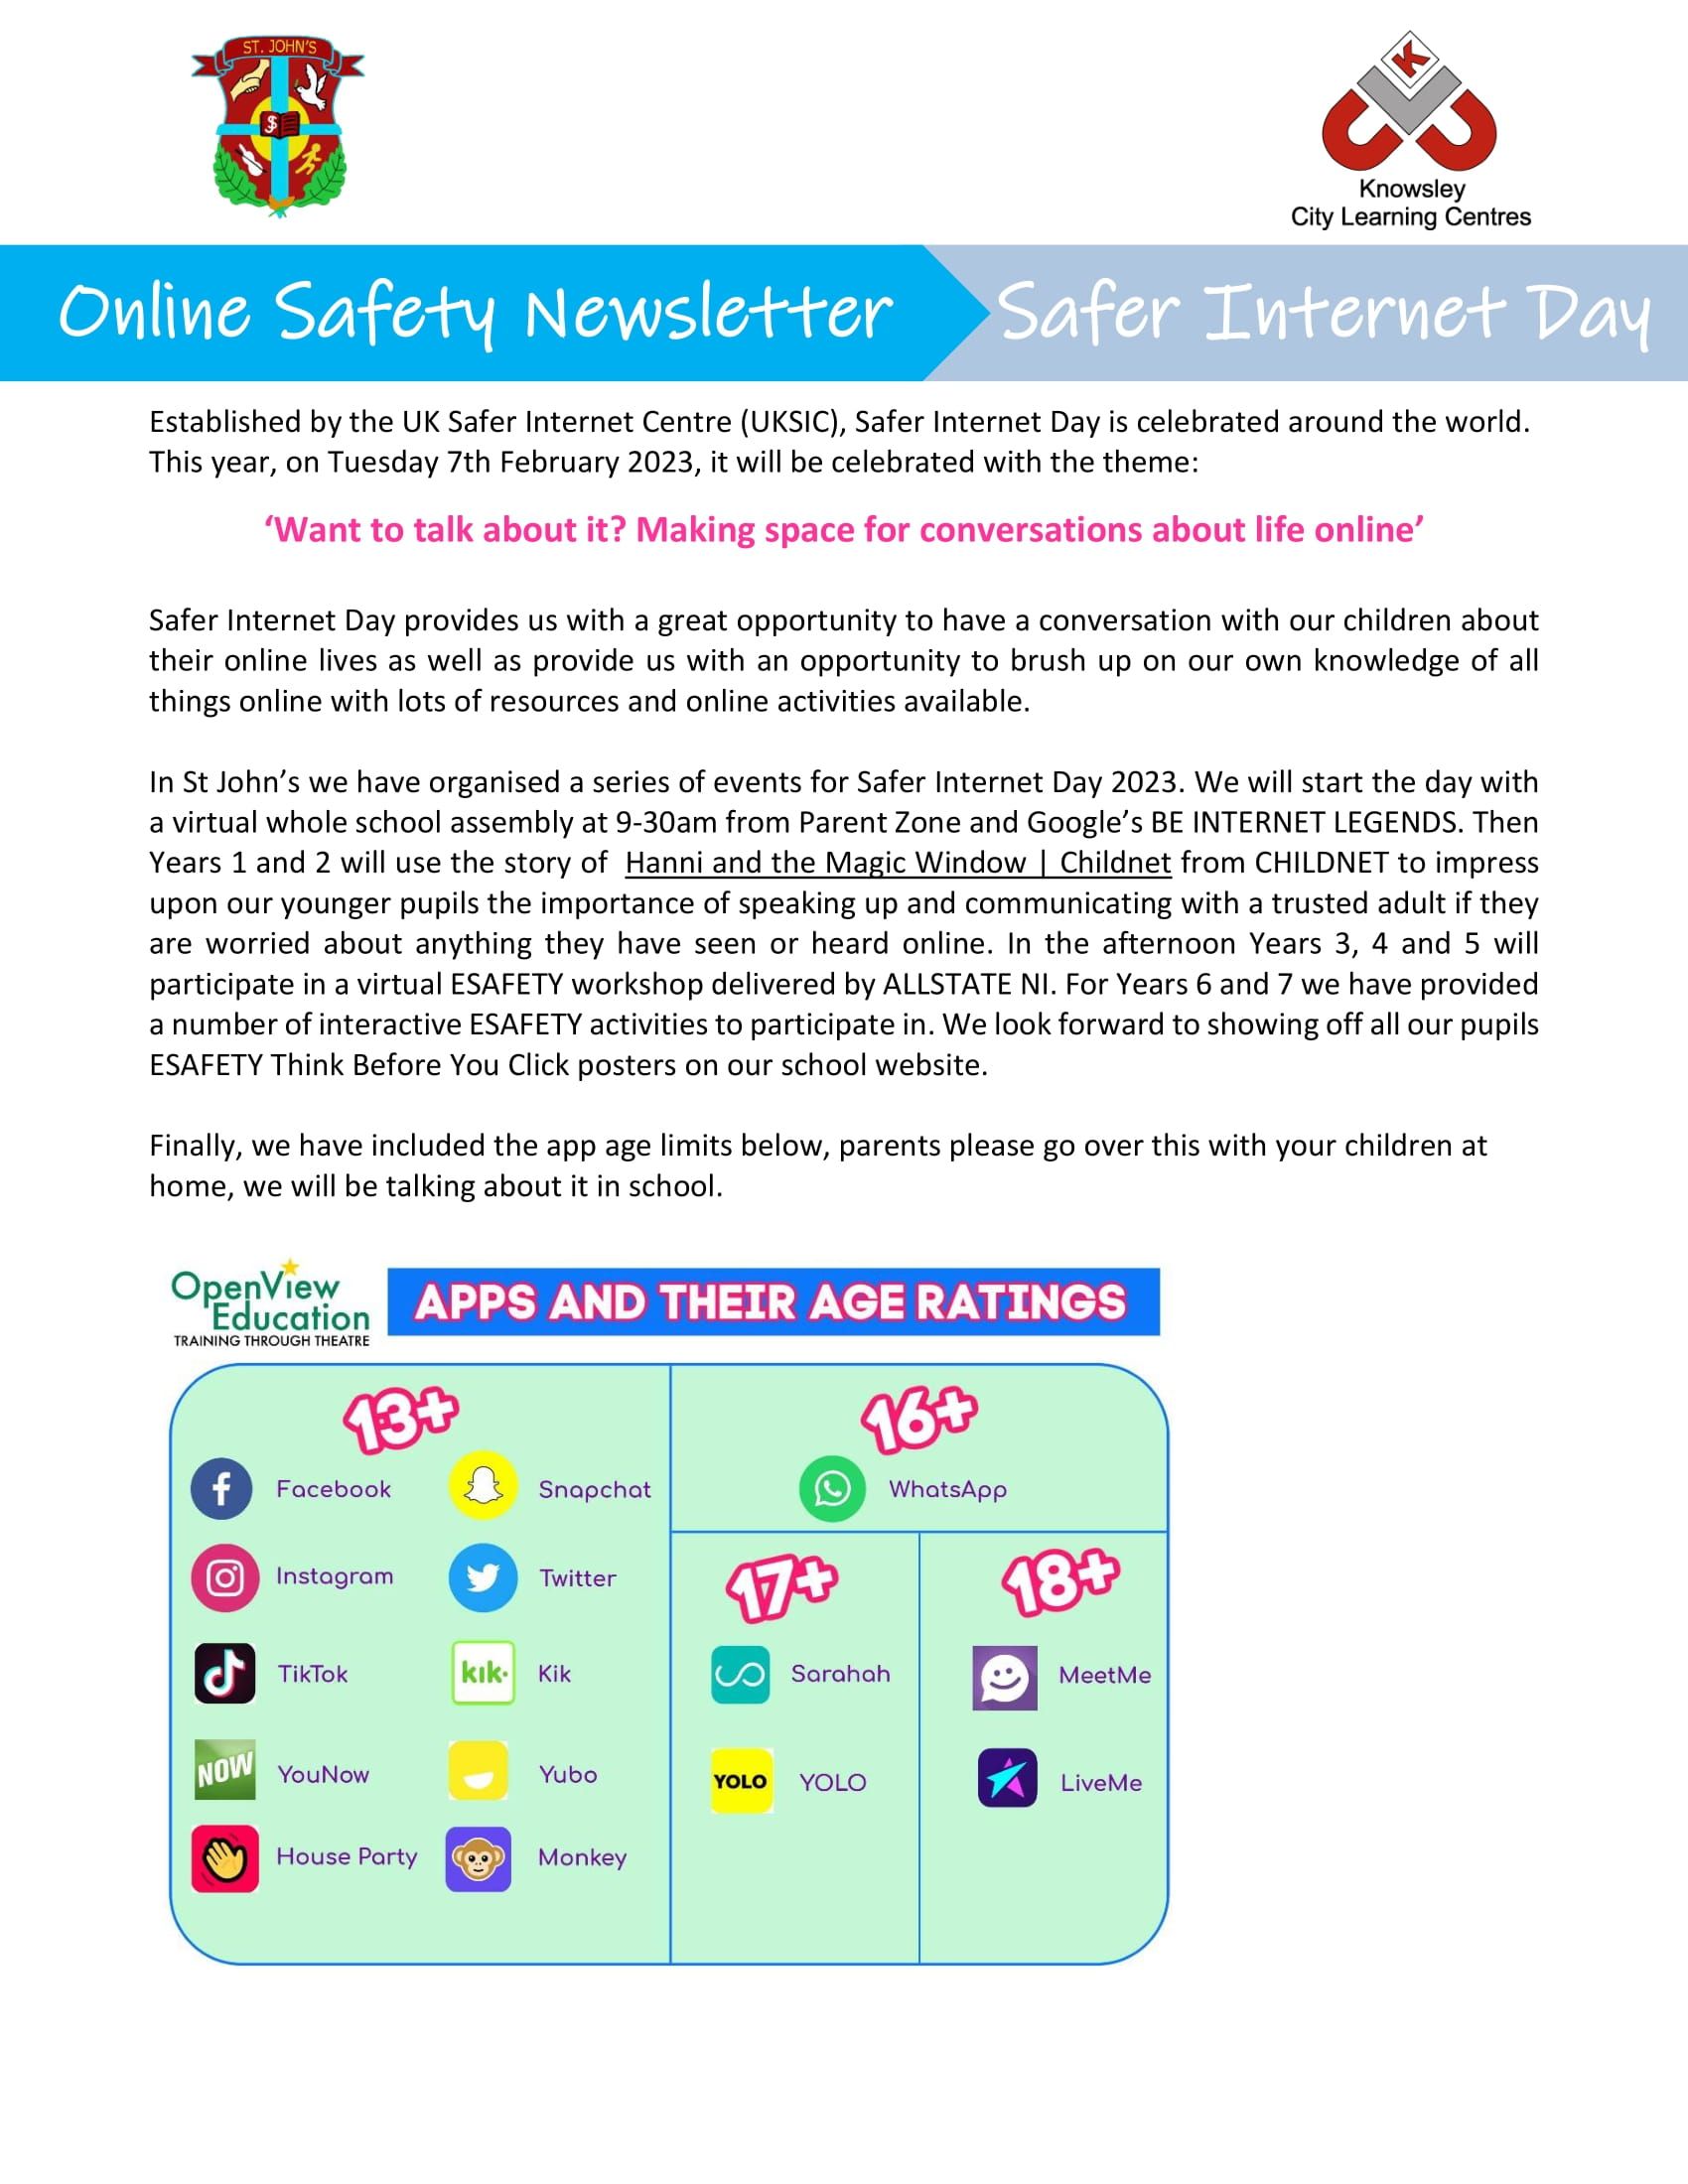 Online Safety Newsletter - Safer Internet Day